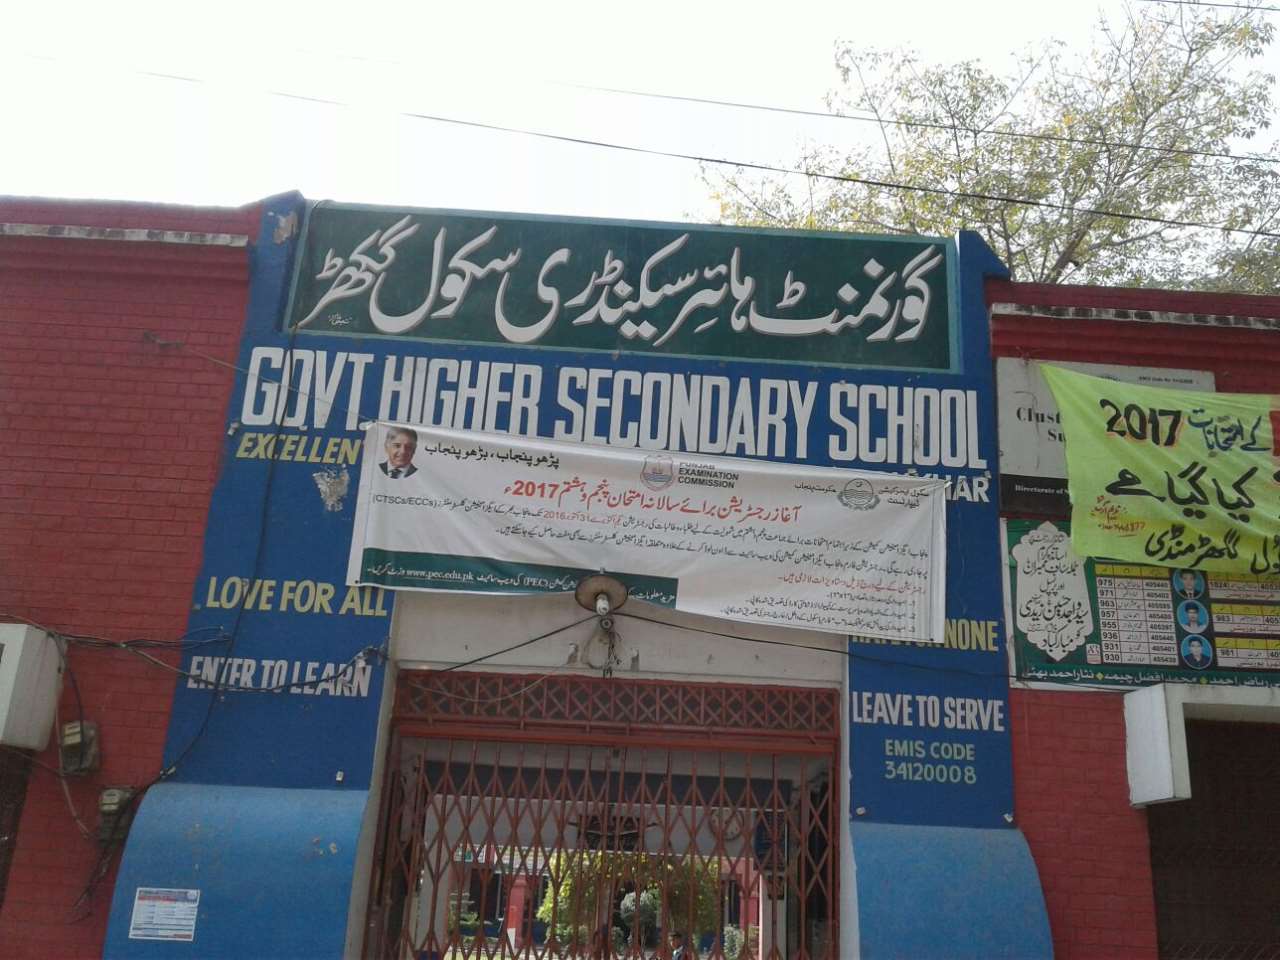 والدین بچوں کو سکول بھیجیں تا کہ تعلیم سے بہرہ مند ہو سکیں (پرنسپل ذوالفقار علی چٹھہ)